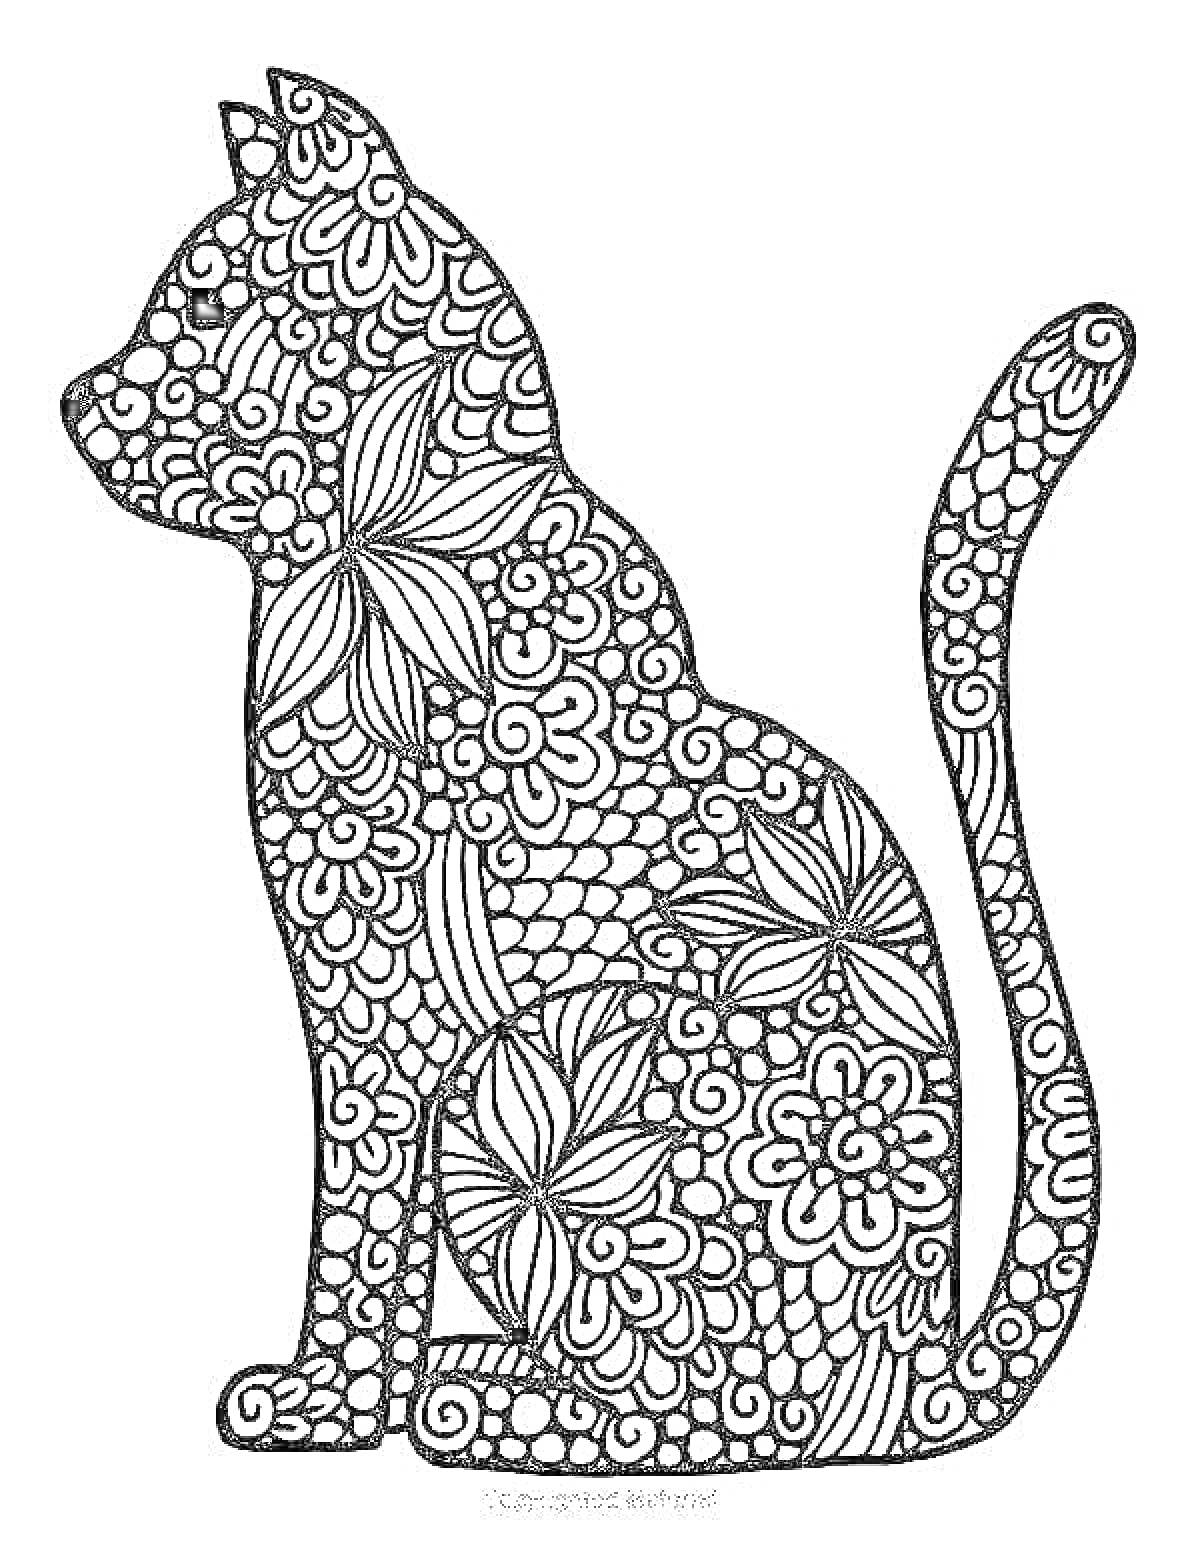 Раскраска Силуэт кошки, украшенный цветочными и геометрическими узорами